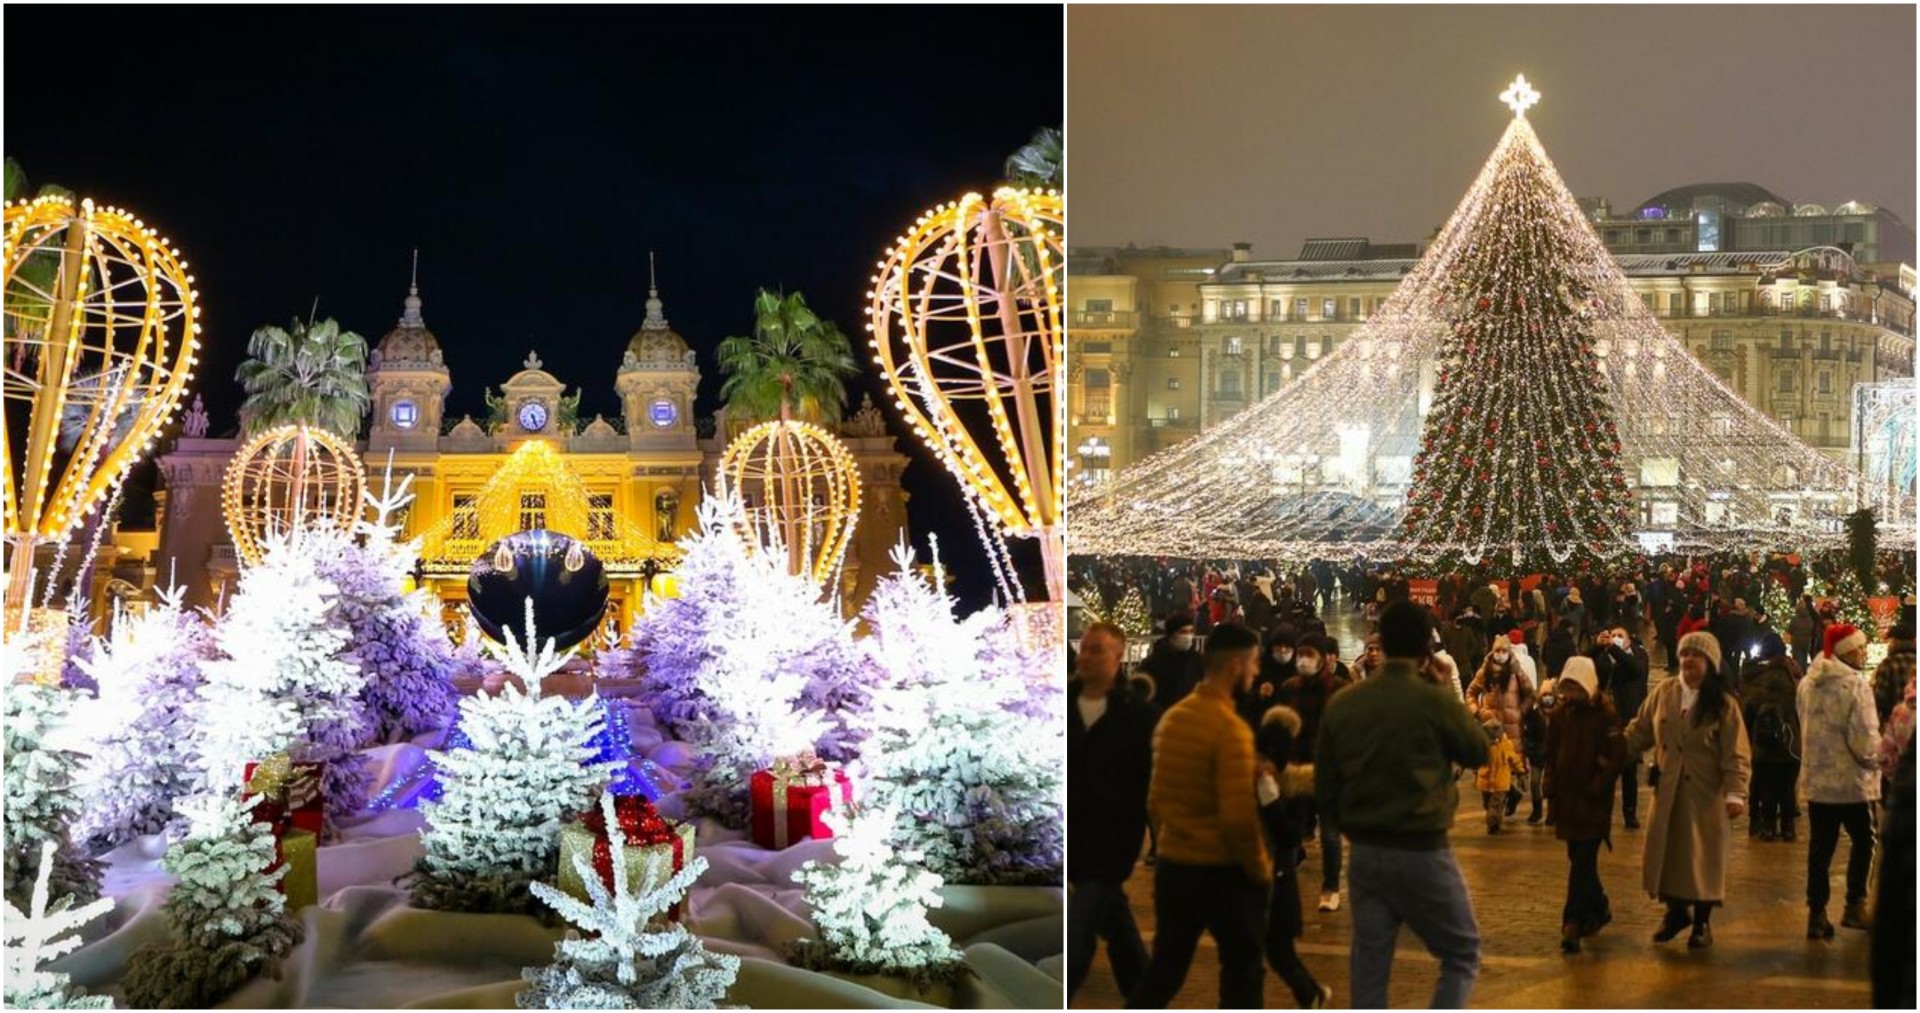 КАКО ВО БАЈКА: Европски градови кои изгледаат најубаво за време на новогодишните празници (ФОТО)